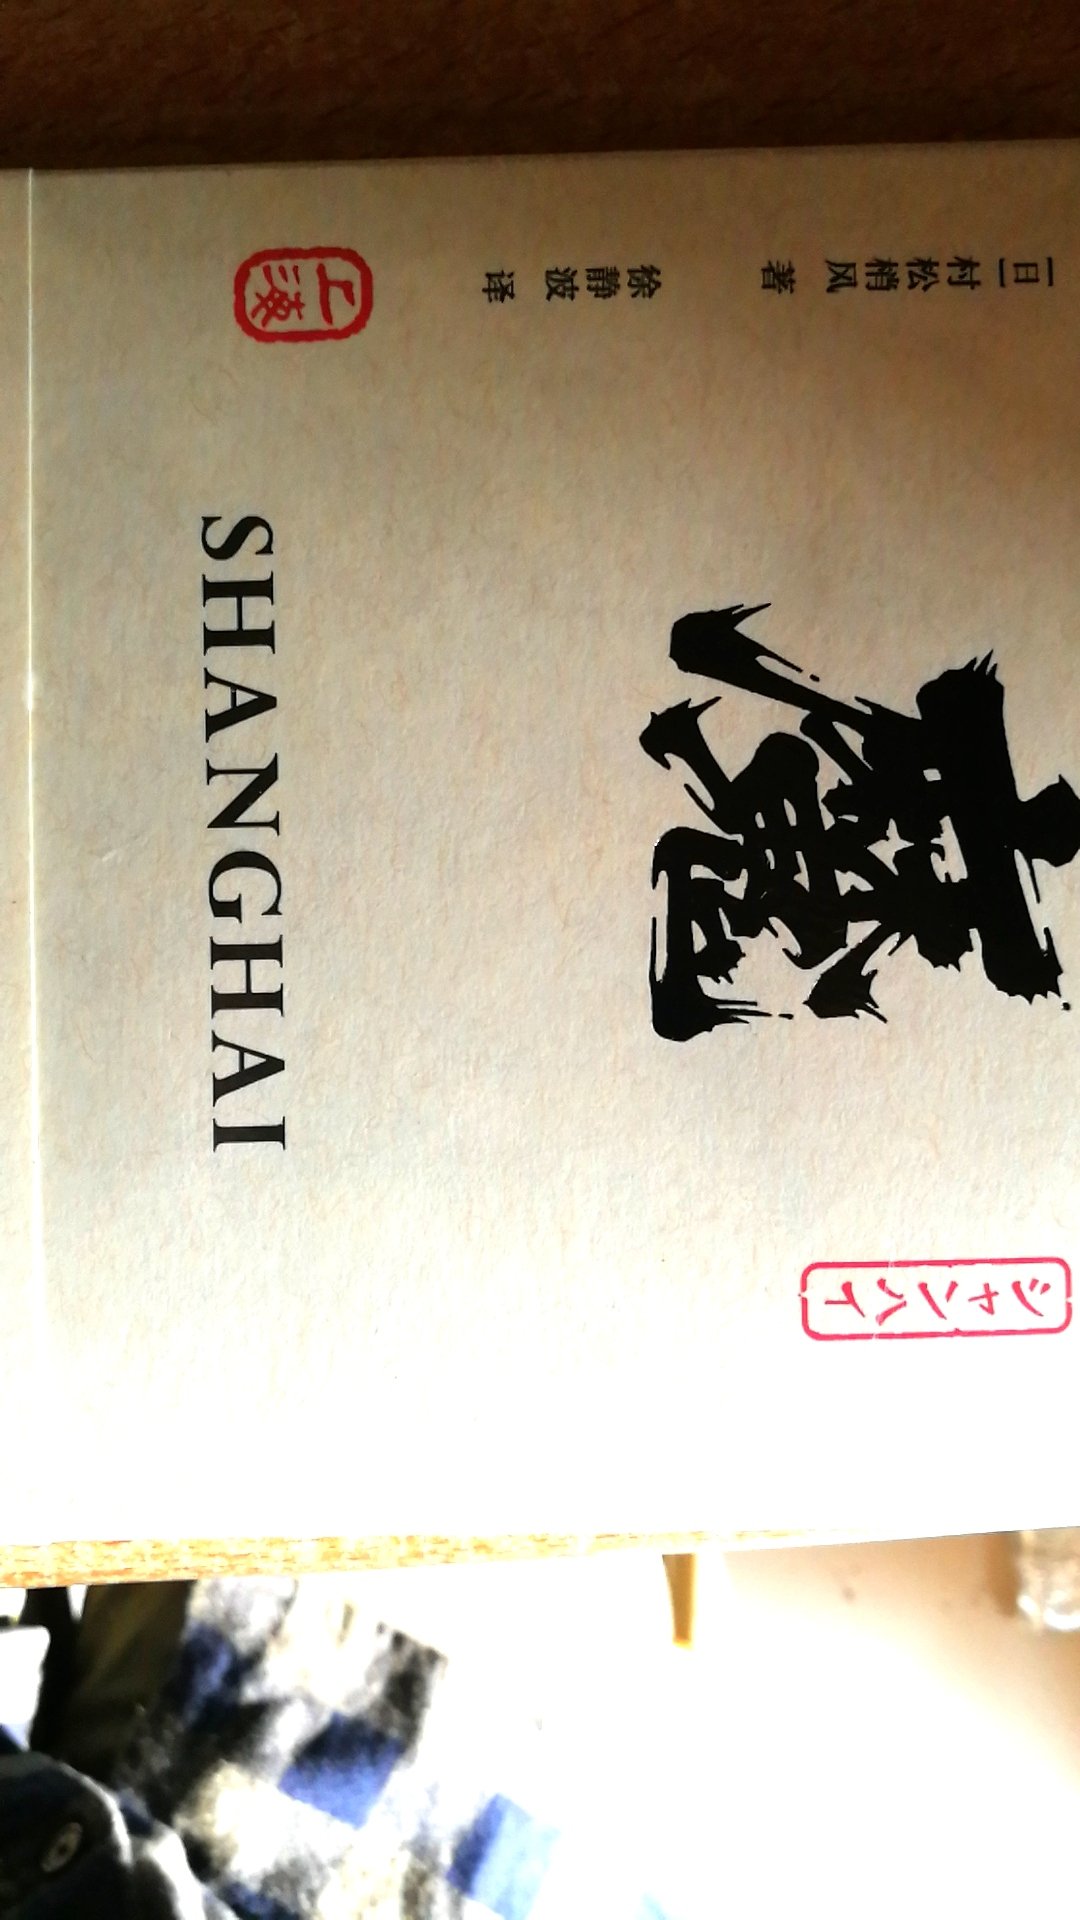 小巧的小册子，希望能够从这本游记中了解更多的上海，~人有自己独特的观察角度。